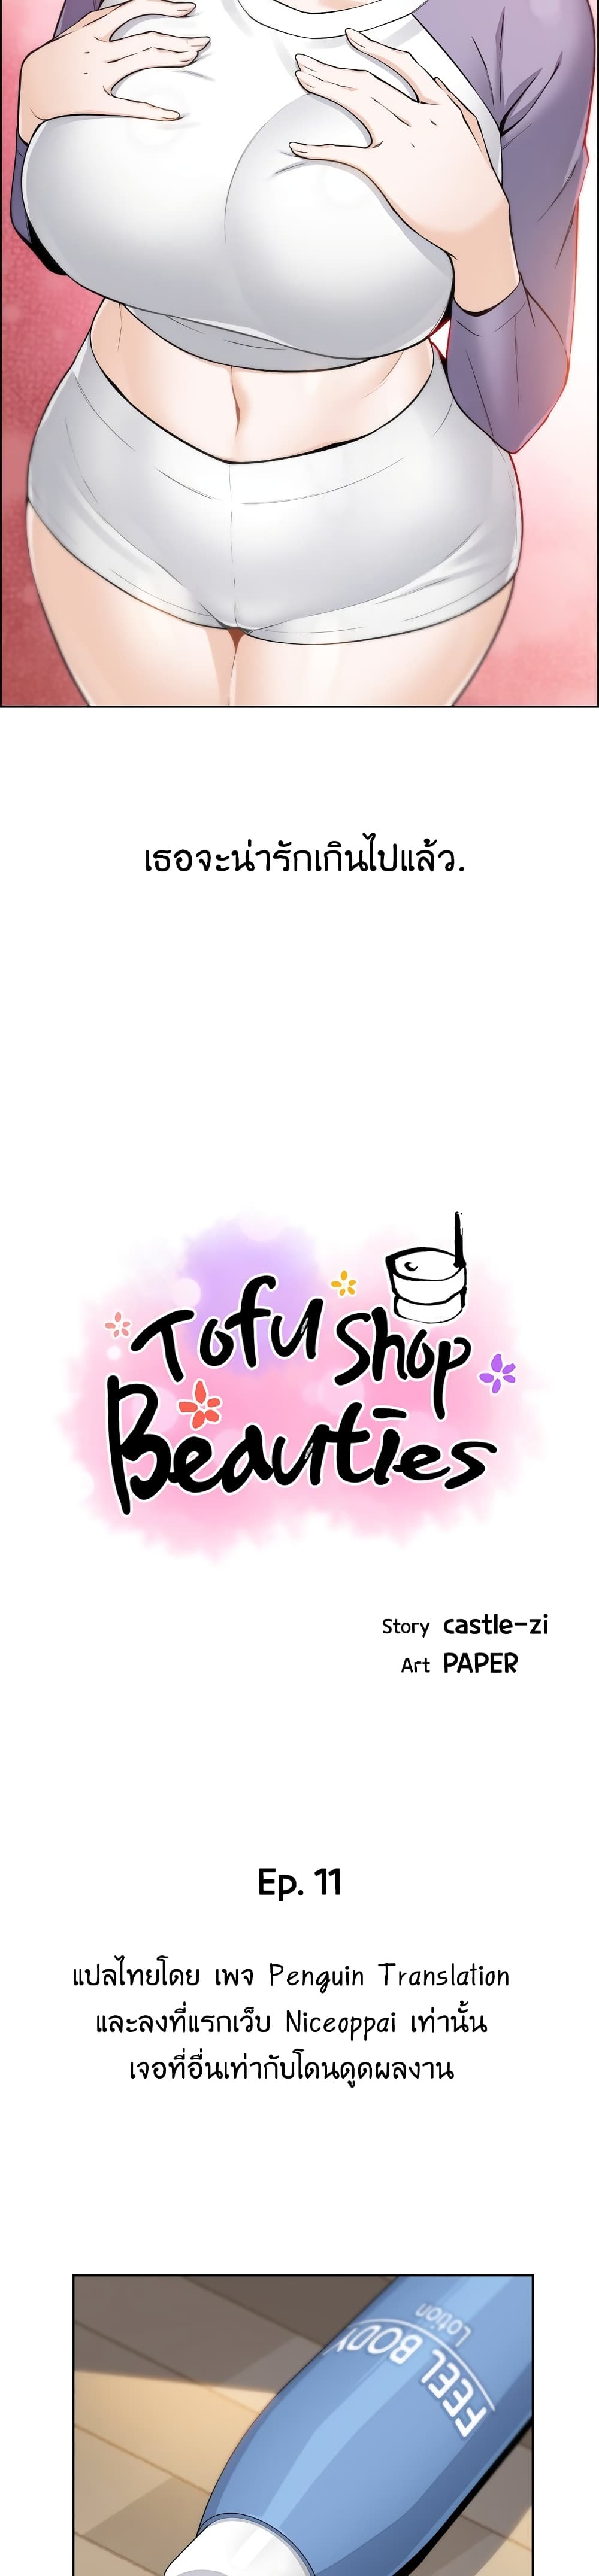 Tofu Shop Beauties 11-11